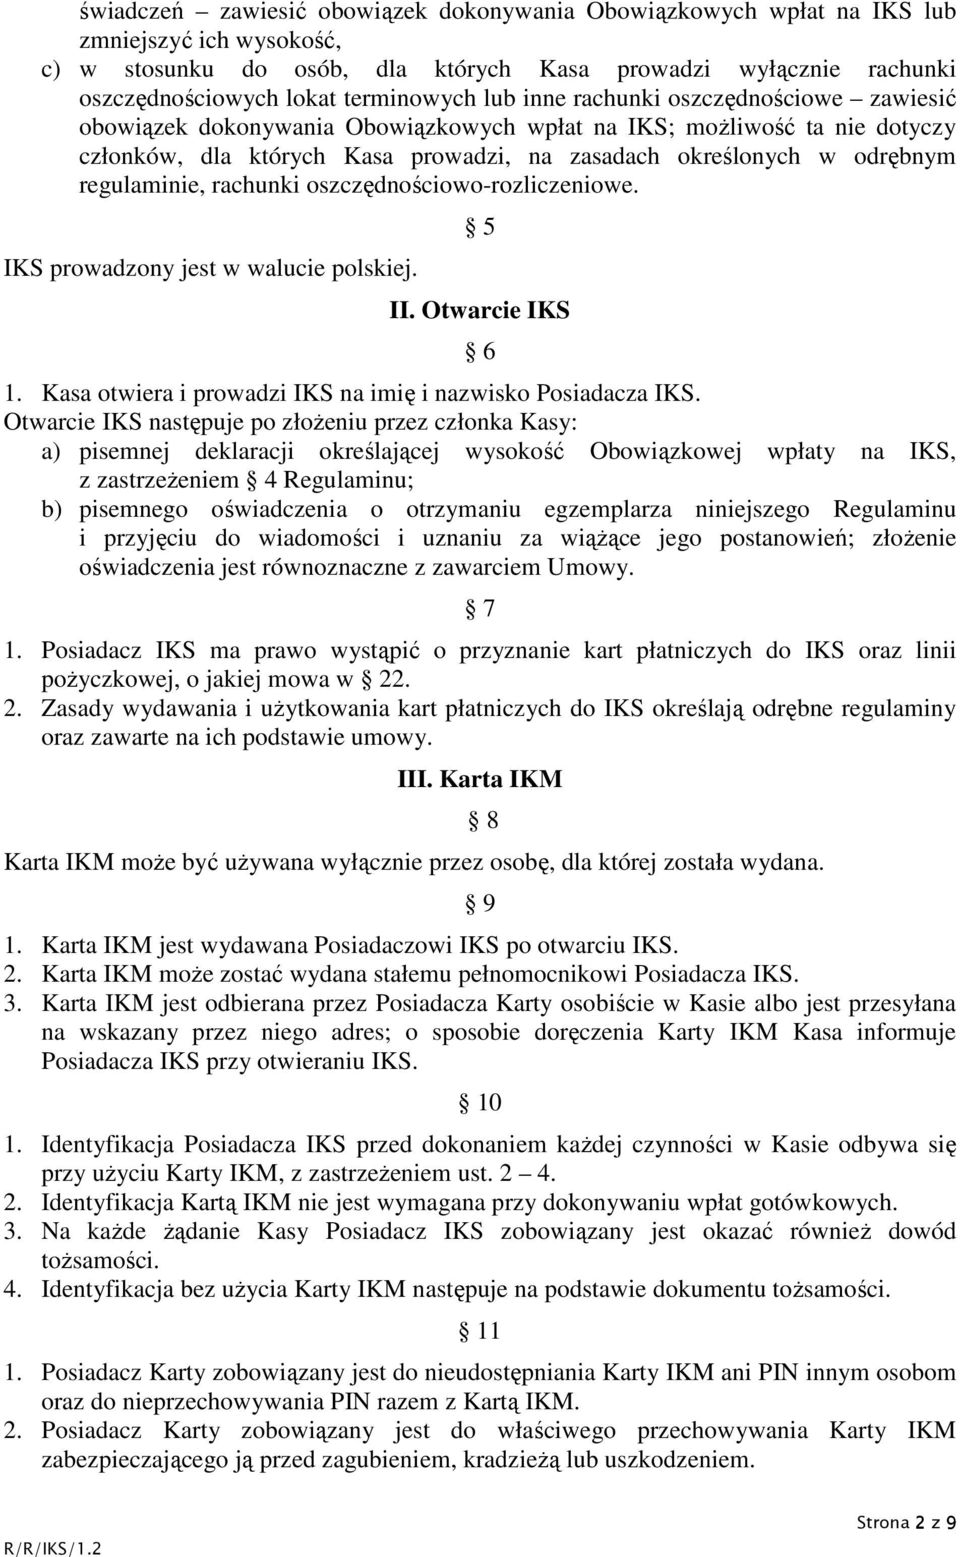 odrębnym regulaminie, rachunki oszczędnościowo-rozliczeniowe. IKS prowadzony jest w walucie polskiej. 5 II. Otwarcie IKS 6 1. Kasa otwiera i prowadzi IKS na imię i nazwisko Posiadacza IKS.